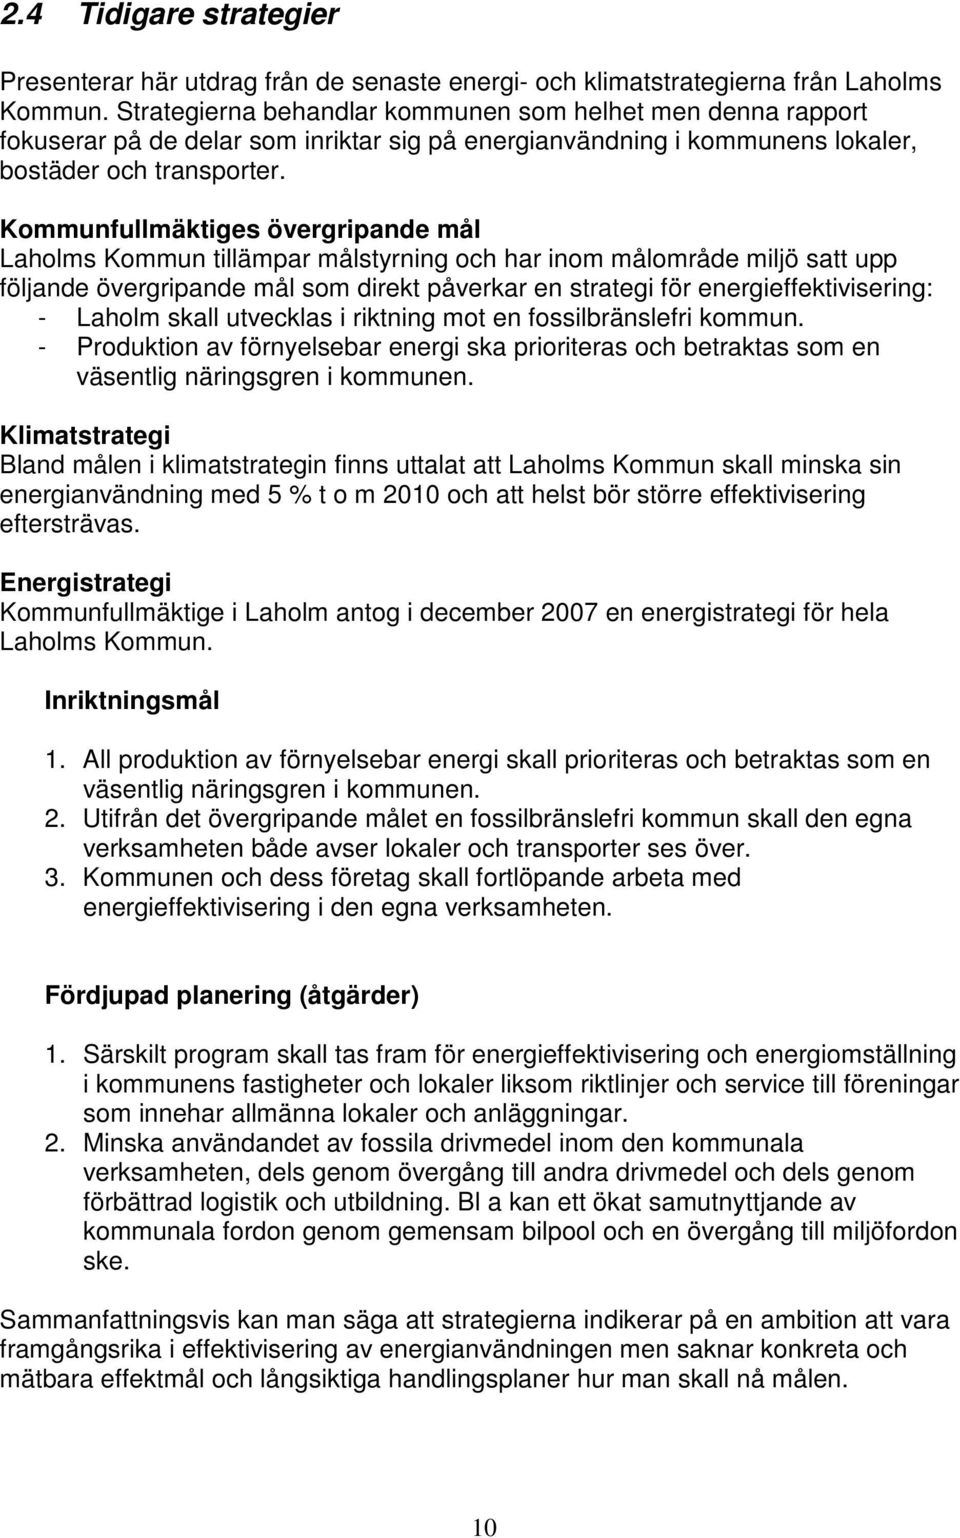 Kommunfullmäktiges övergripande mål Laholms Kommun tillämpar målstyrning och har inom målområde miljö satt upp följande övergripande mål som direkt påverkar en strategi för energieffektivisering: -